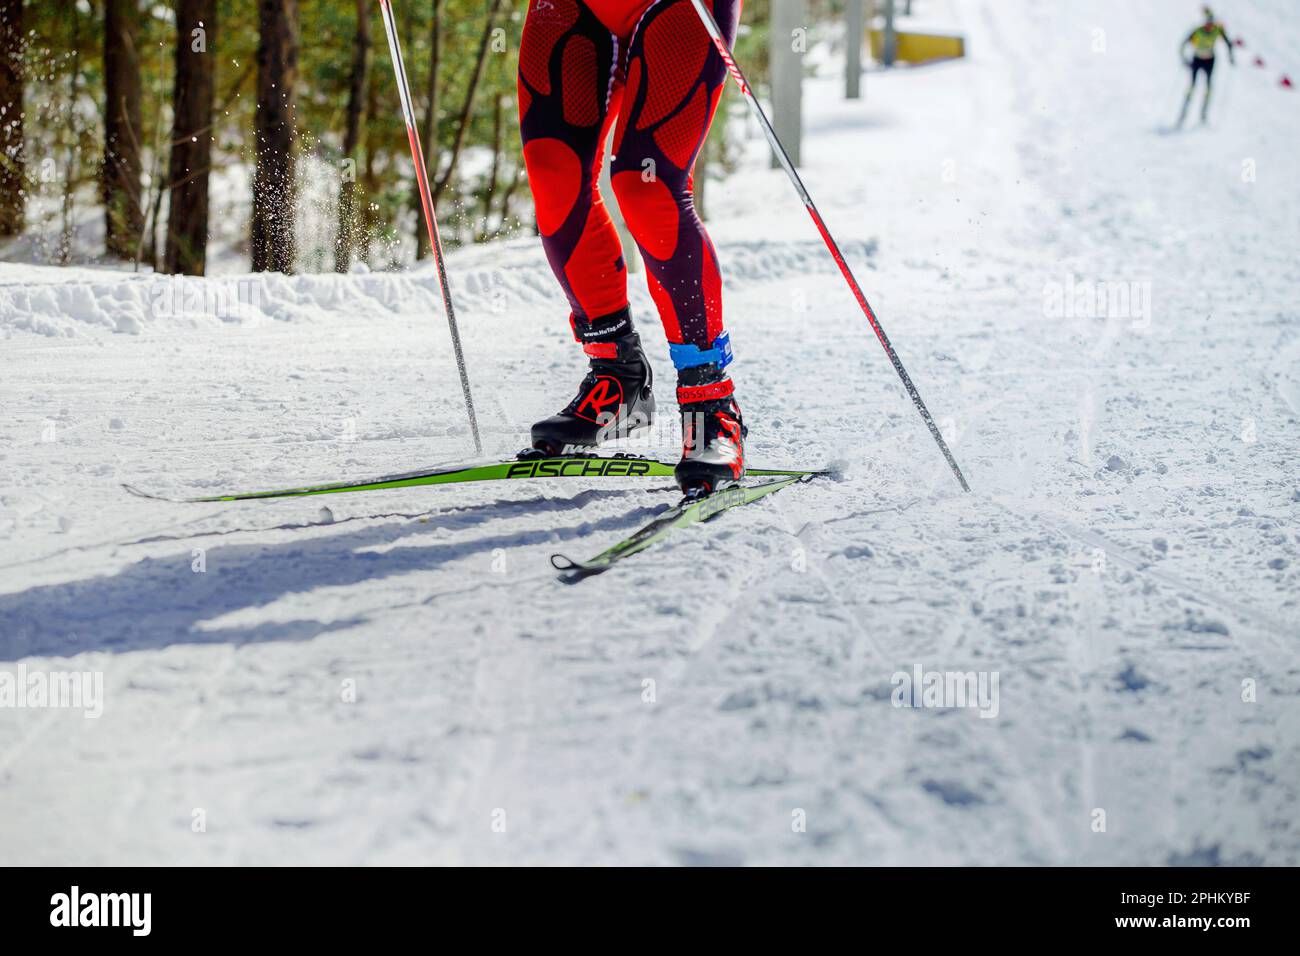 Athlète skieur en montée en compétition de ski, ski de course Fischer, chaussures de ski Rossignol, HuTag frid TAG dans les jambes, sports olympiques d'hiver Banque D'Images